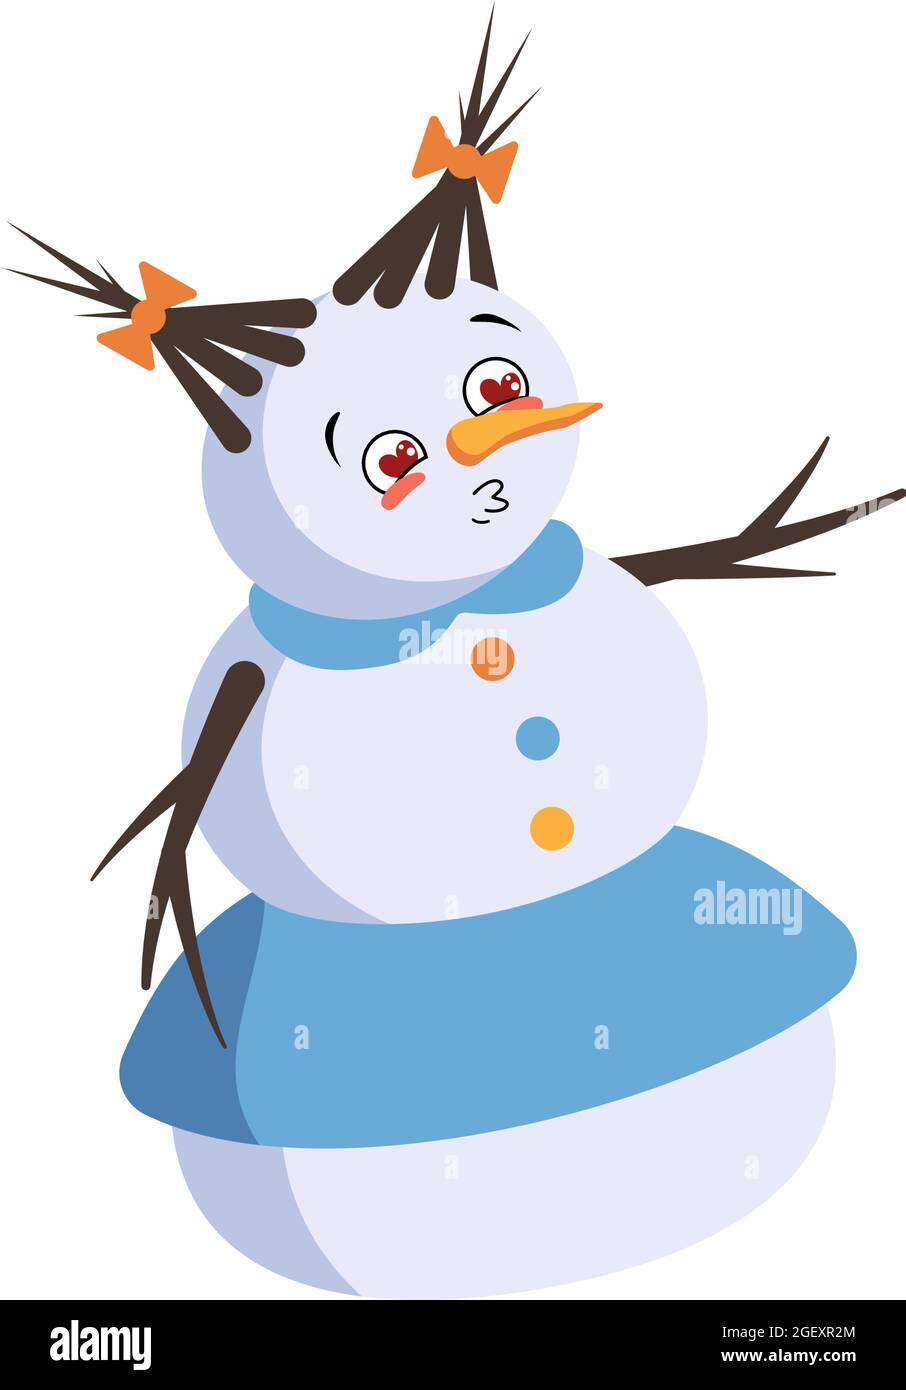 Carino donna di neve di Natale si innamora di occhi cuori, bacio viso, braccia e gambe. Gioioso Capodanno decorazione festosa con espressione gentile, divertente o sorriso emozioni Illustrazione Vettoriale